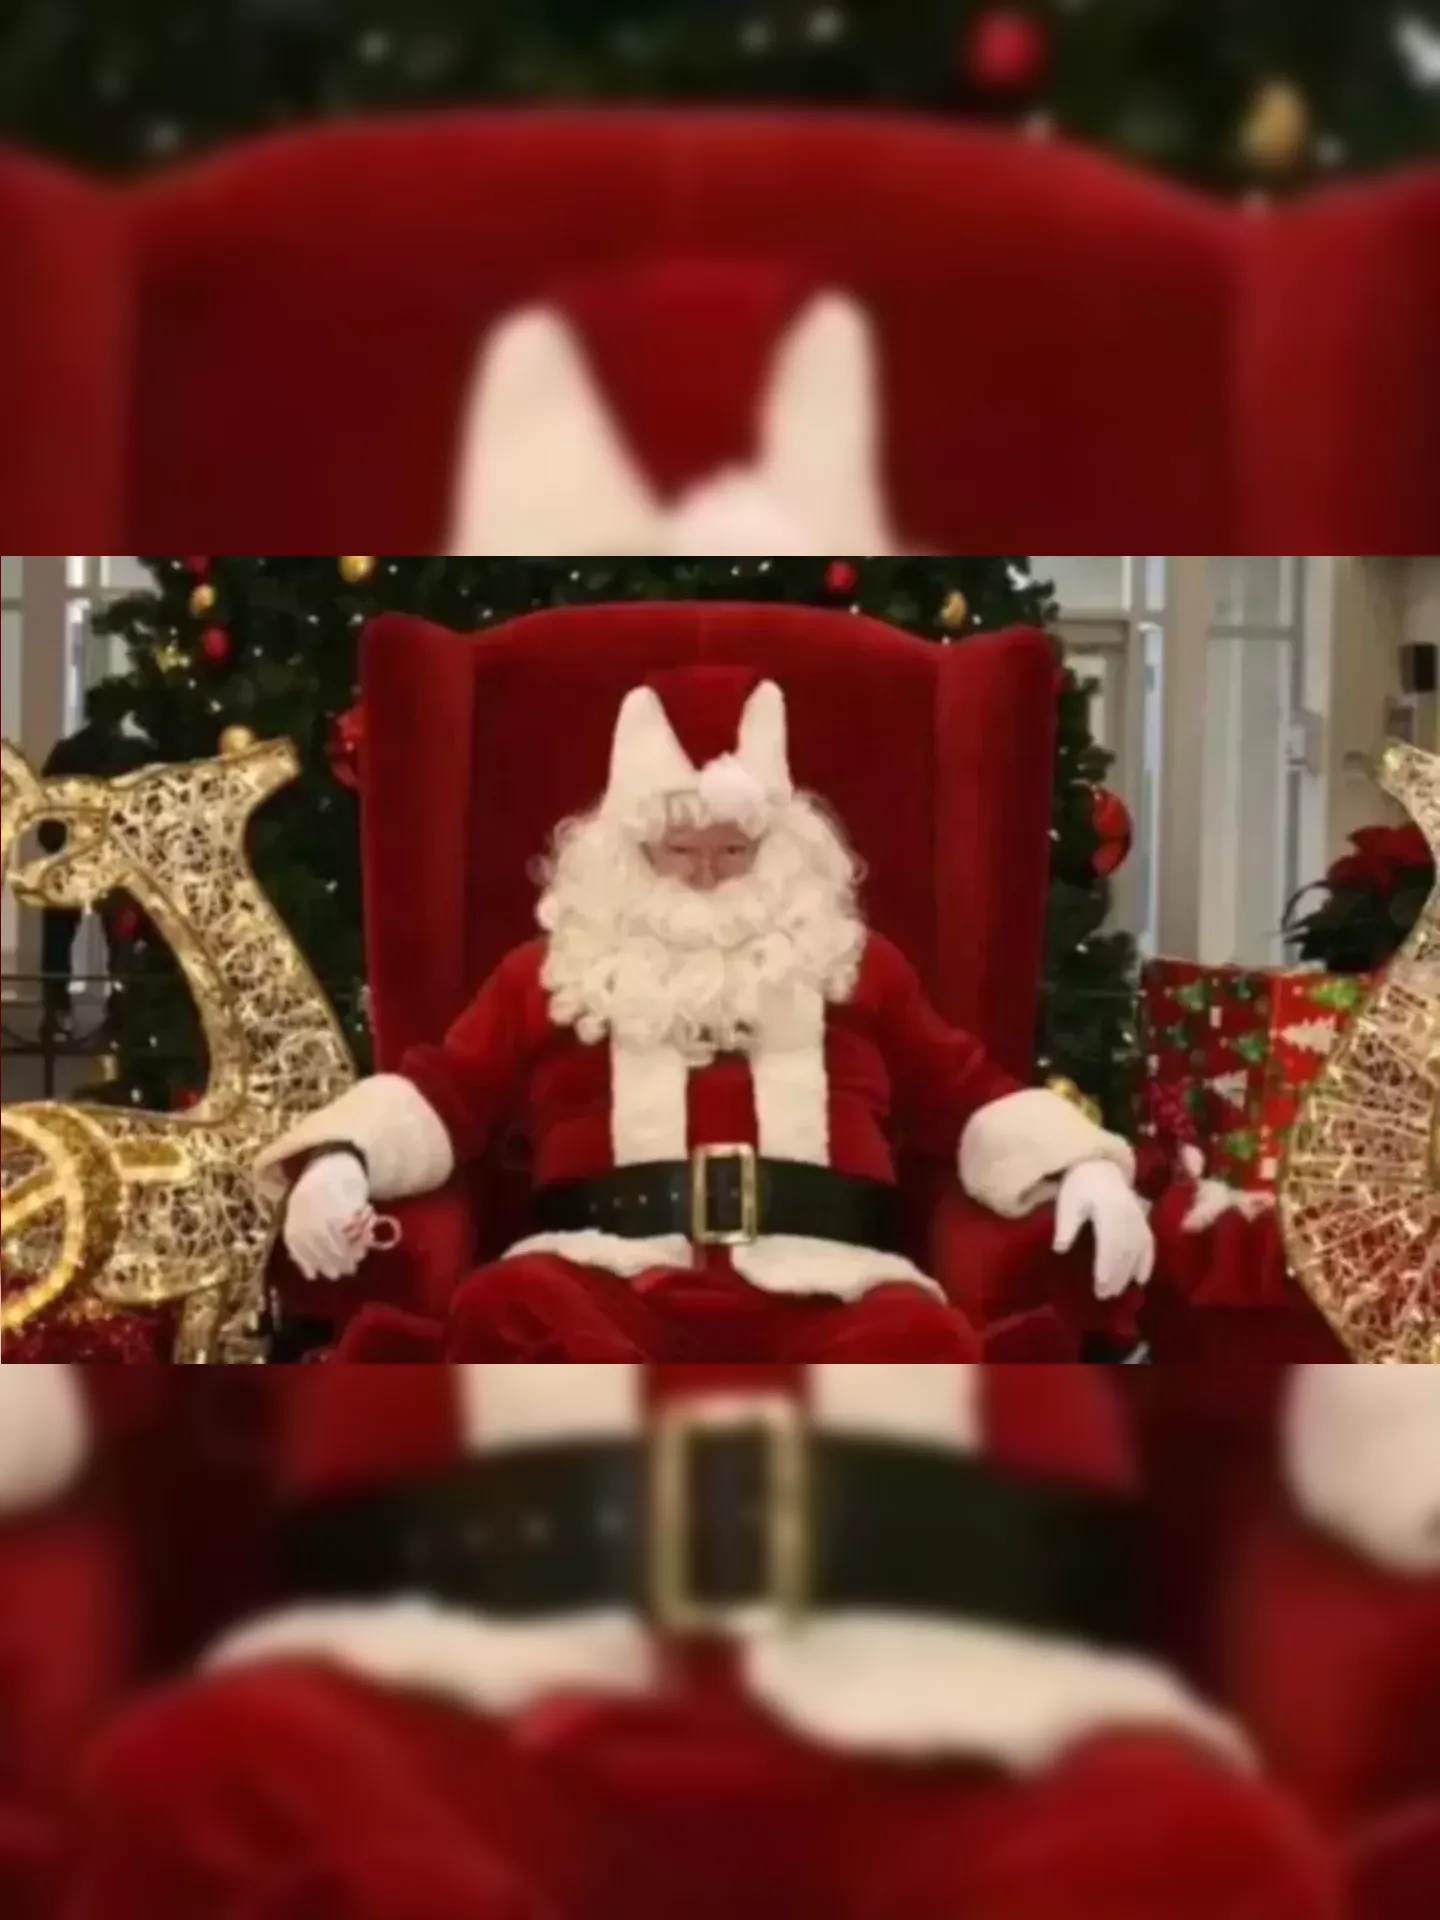 Bruce McArthur trabalhava como Papai Noel em um shopping center no Canadá